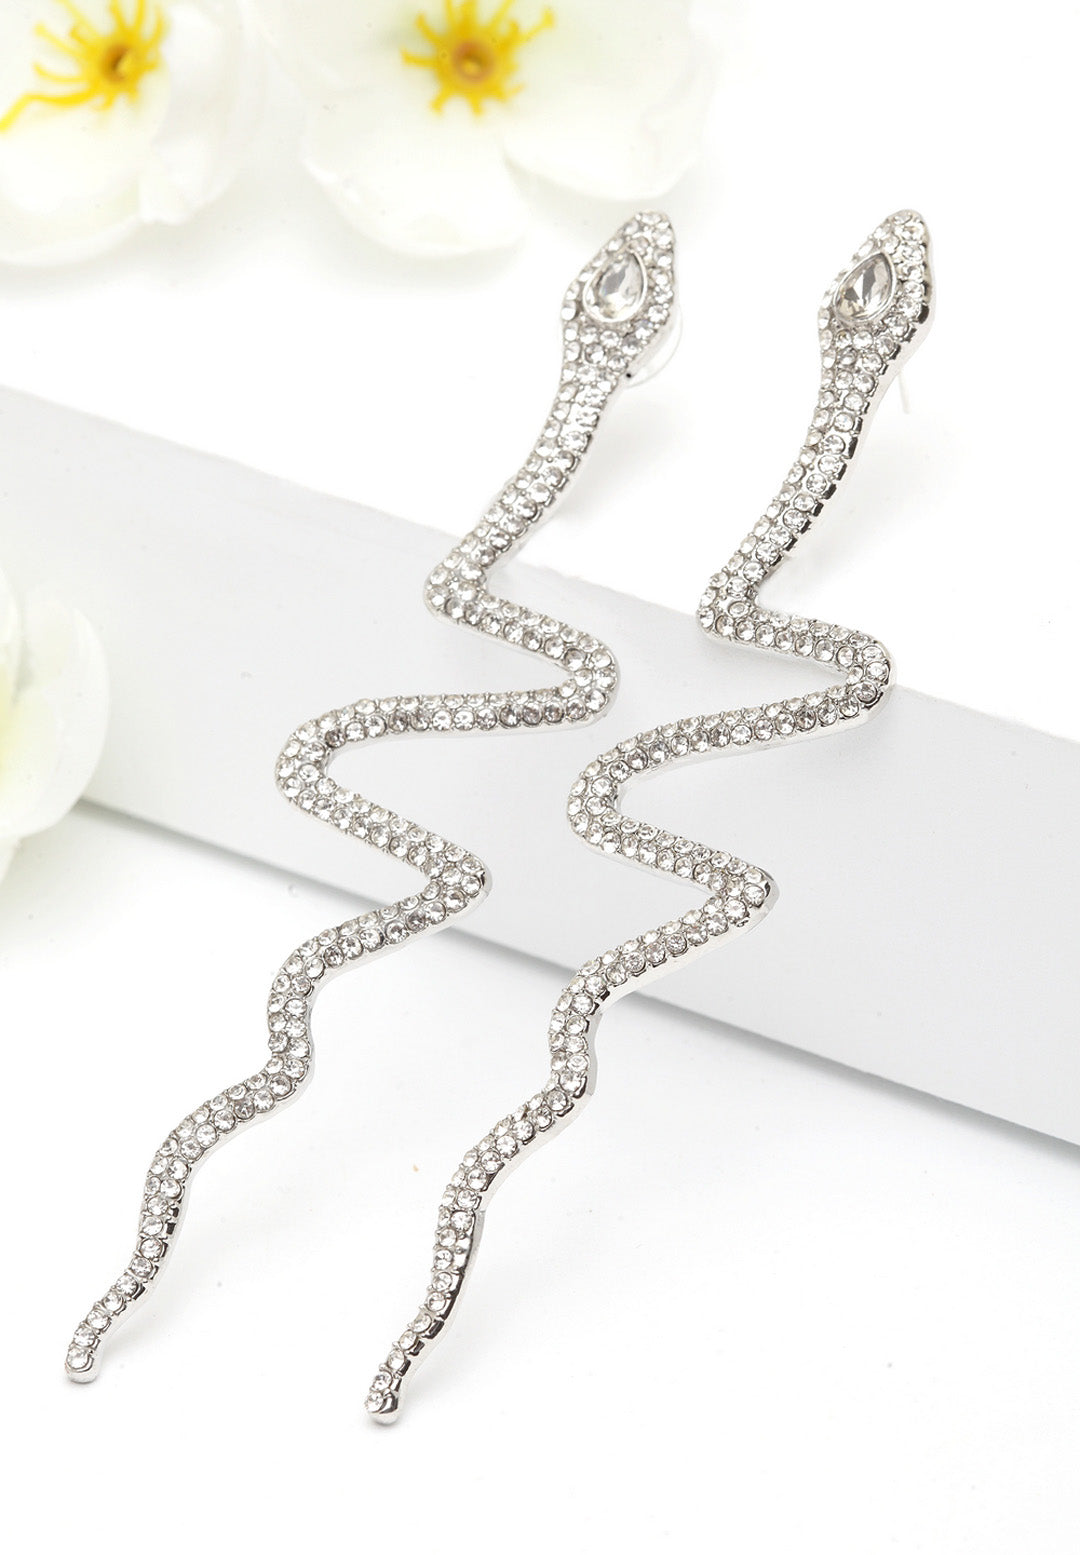 Eleganckie kolczyki z kryształami w kształcie węża